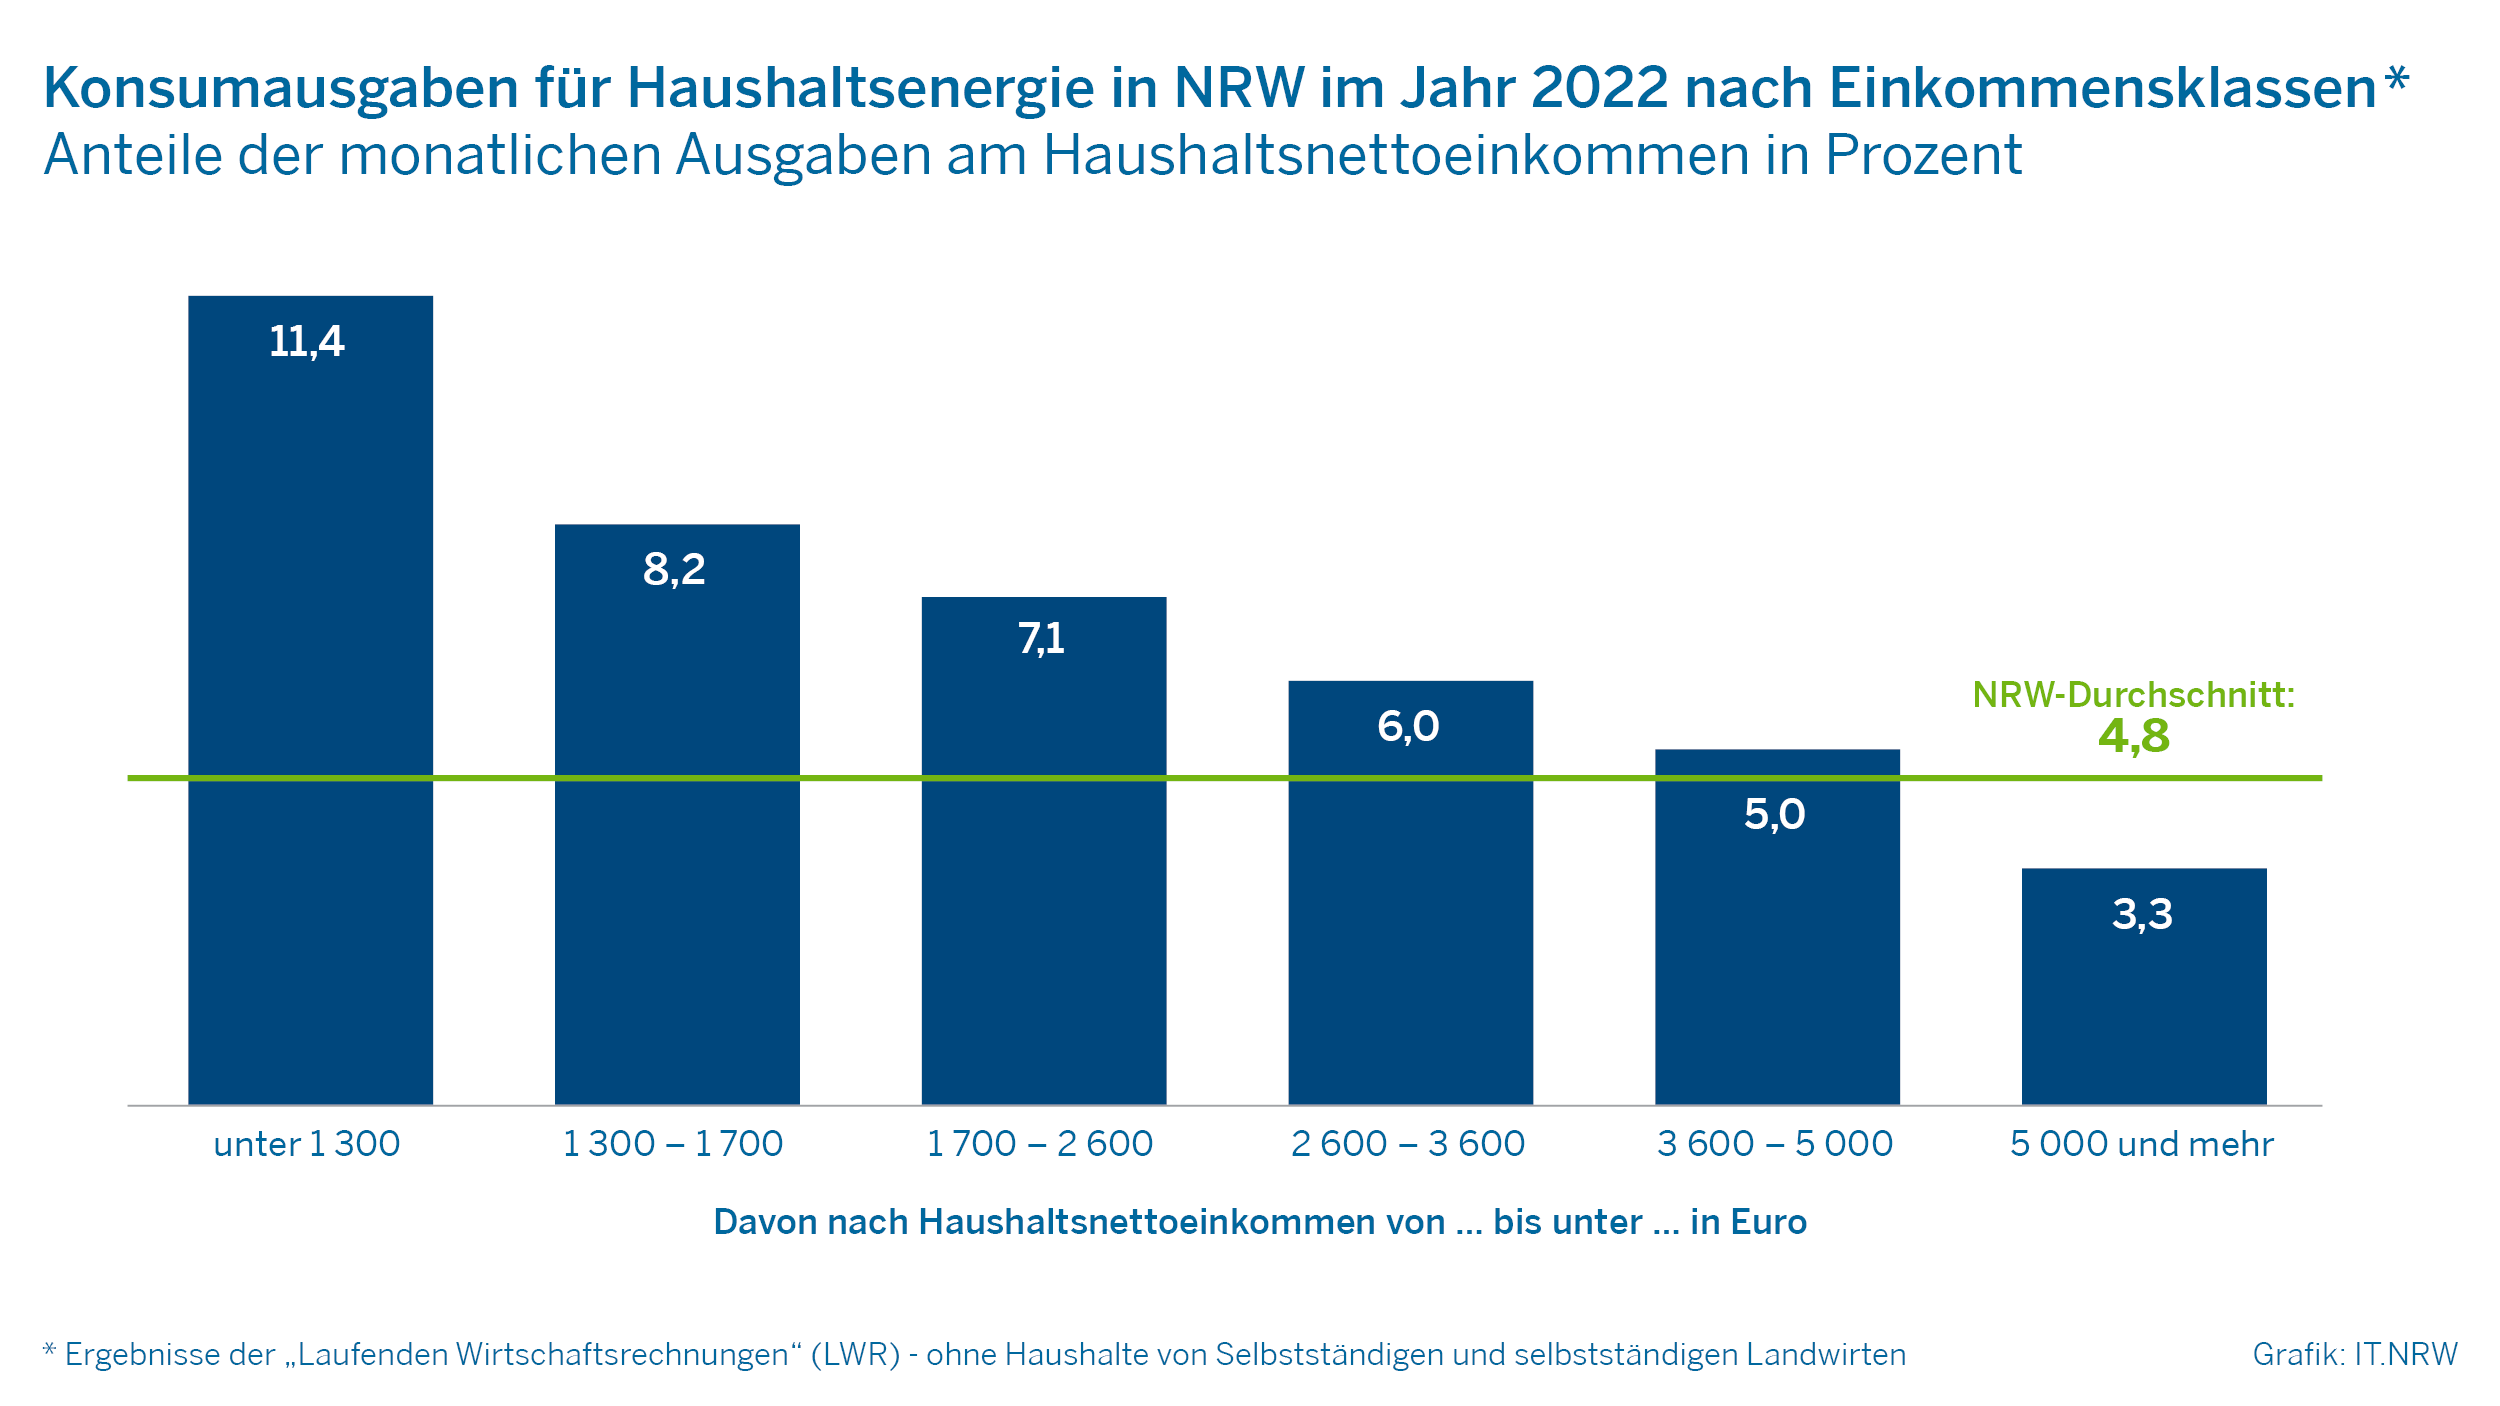 Konsumausgaben für Haushaltsenergie in NRW im Jahr 2022 nach Einkommensklassen